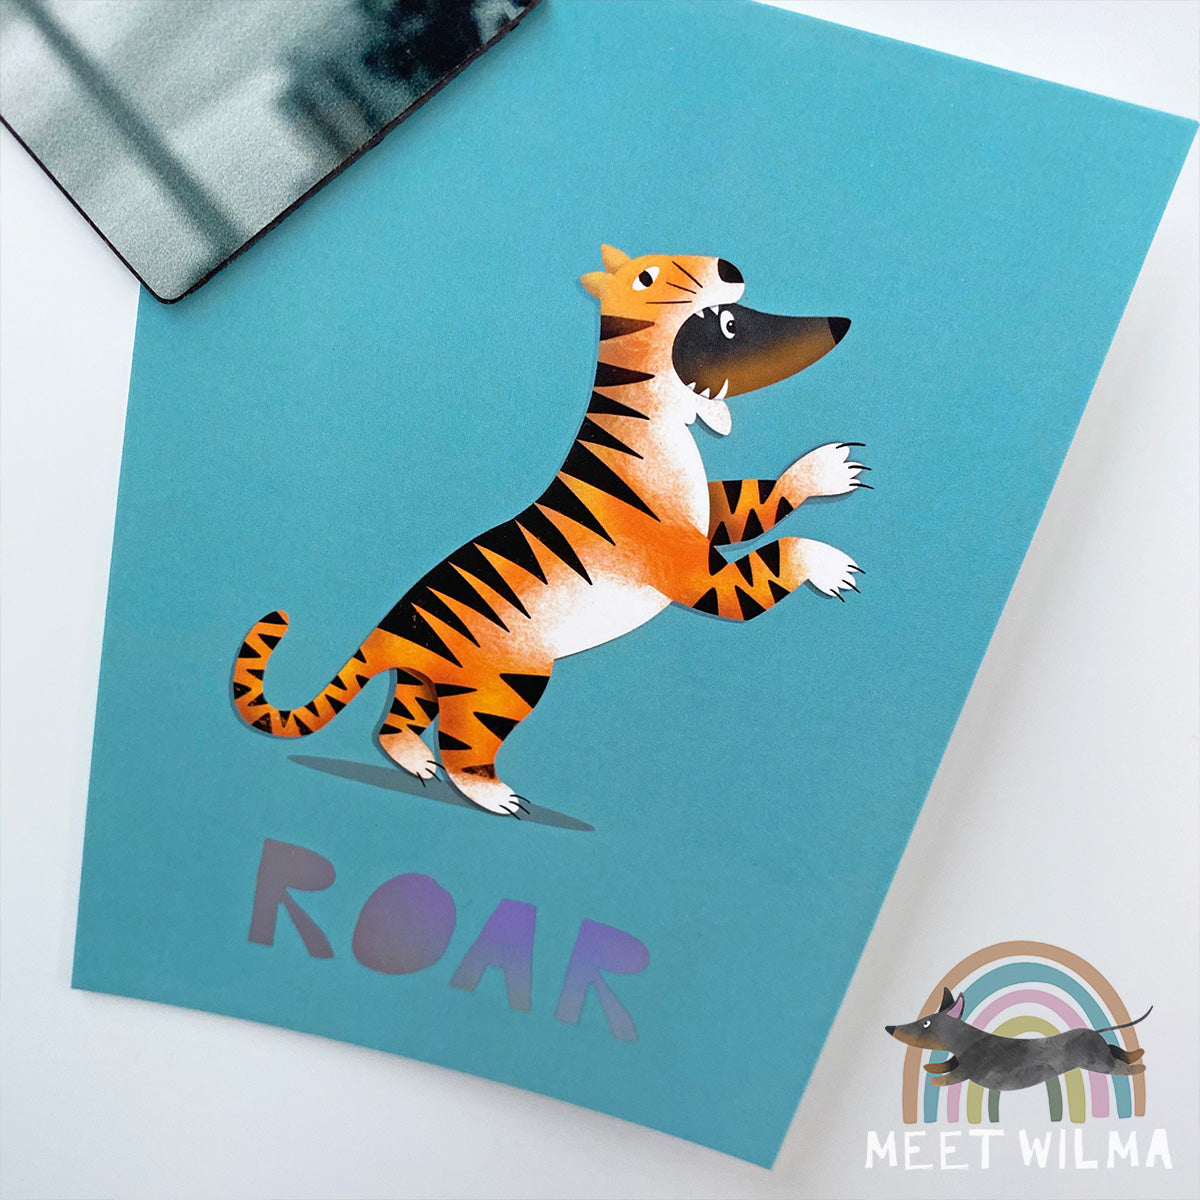 Postcard "ROAR!"